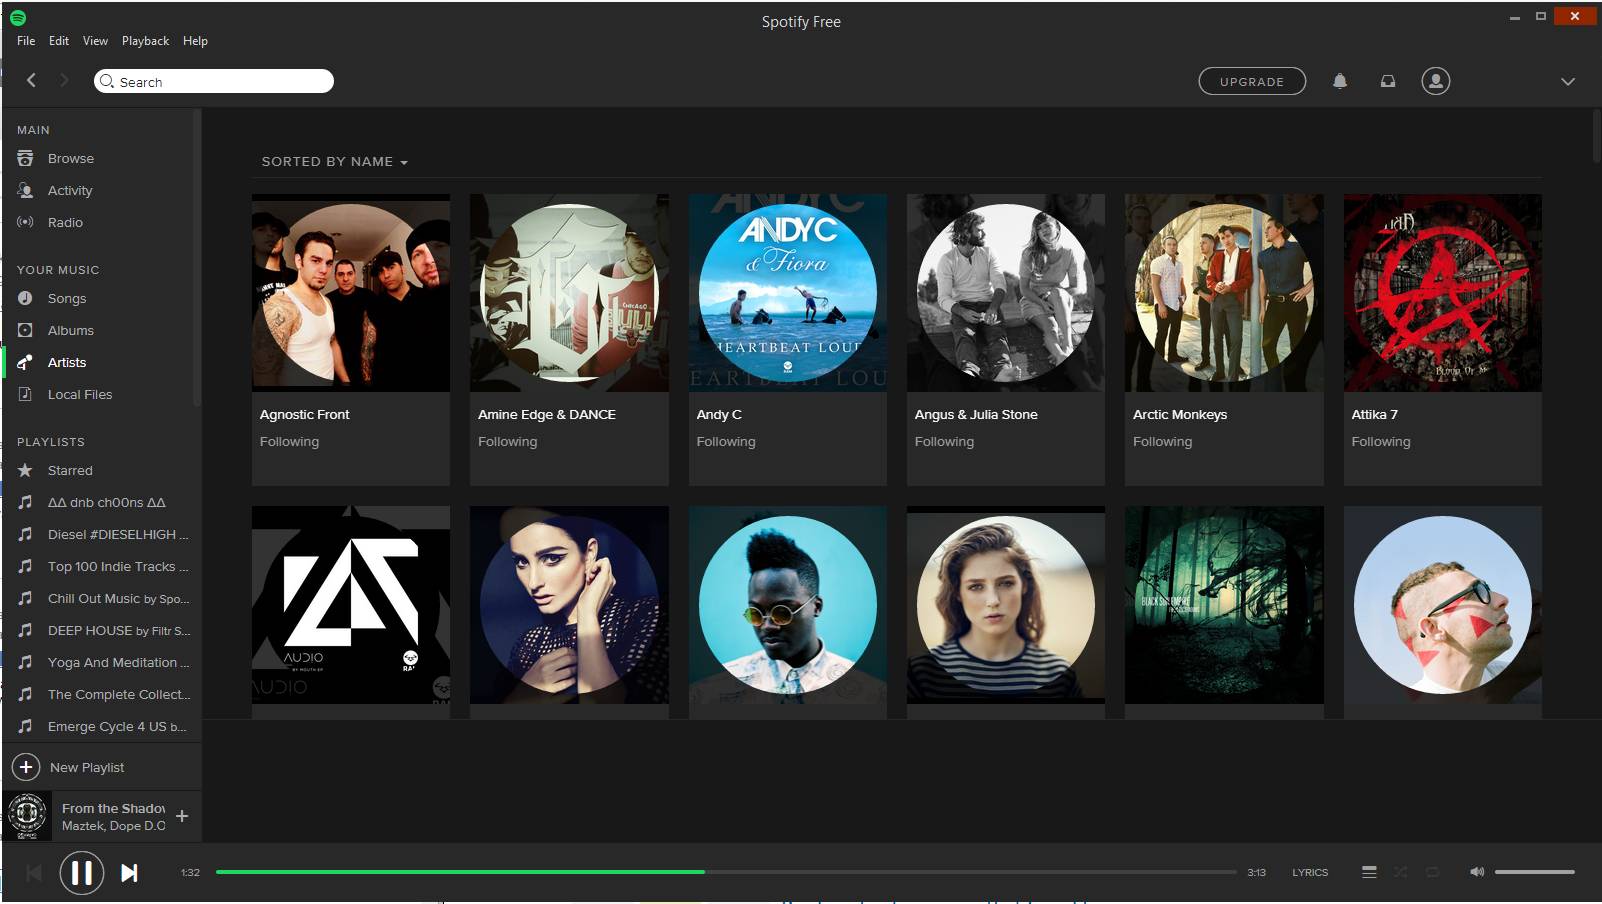 Spotify 1.0 : Main Window